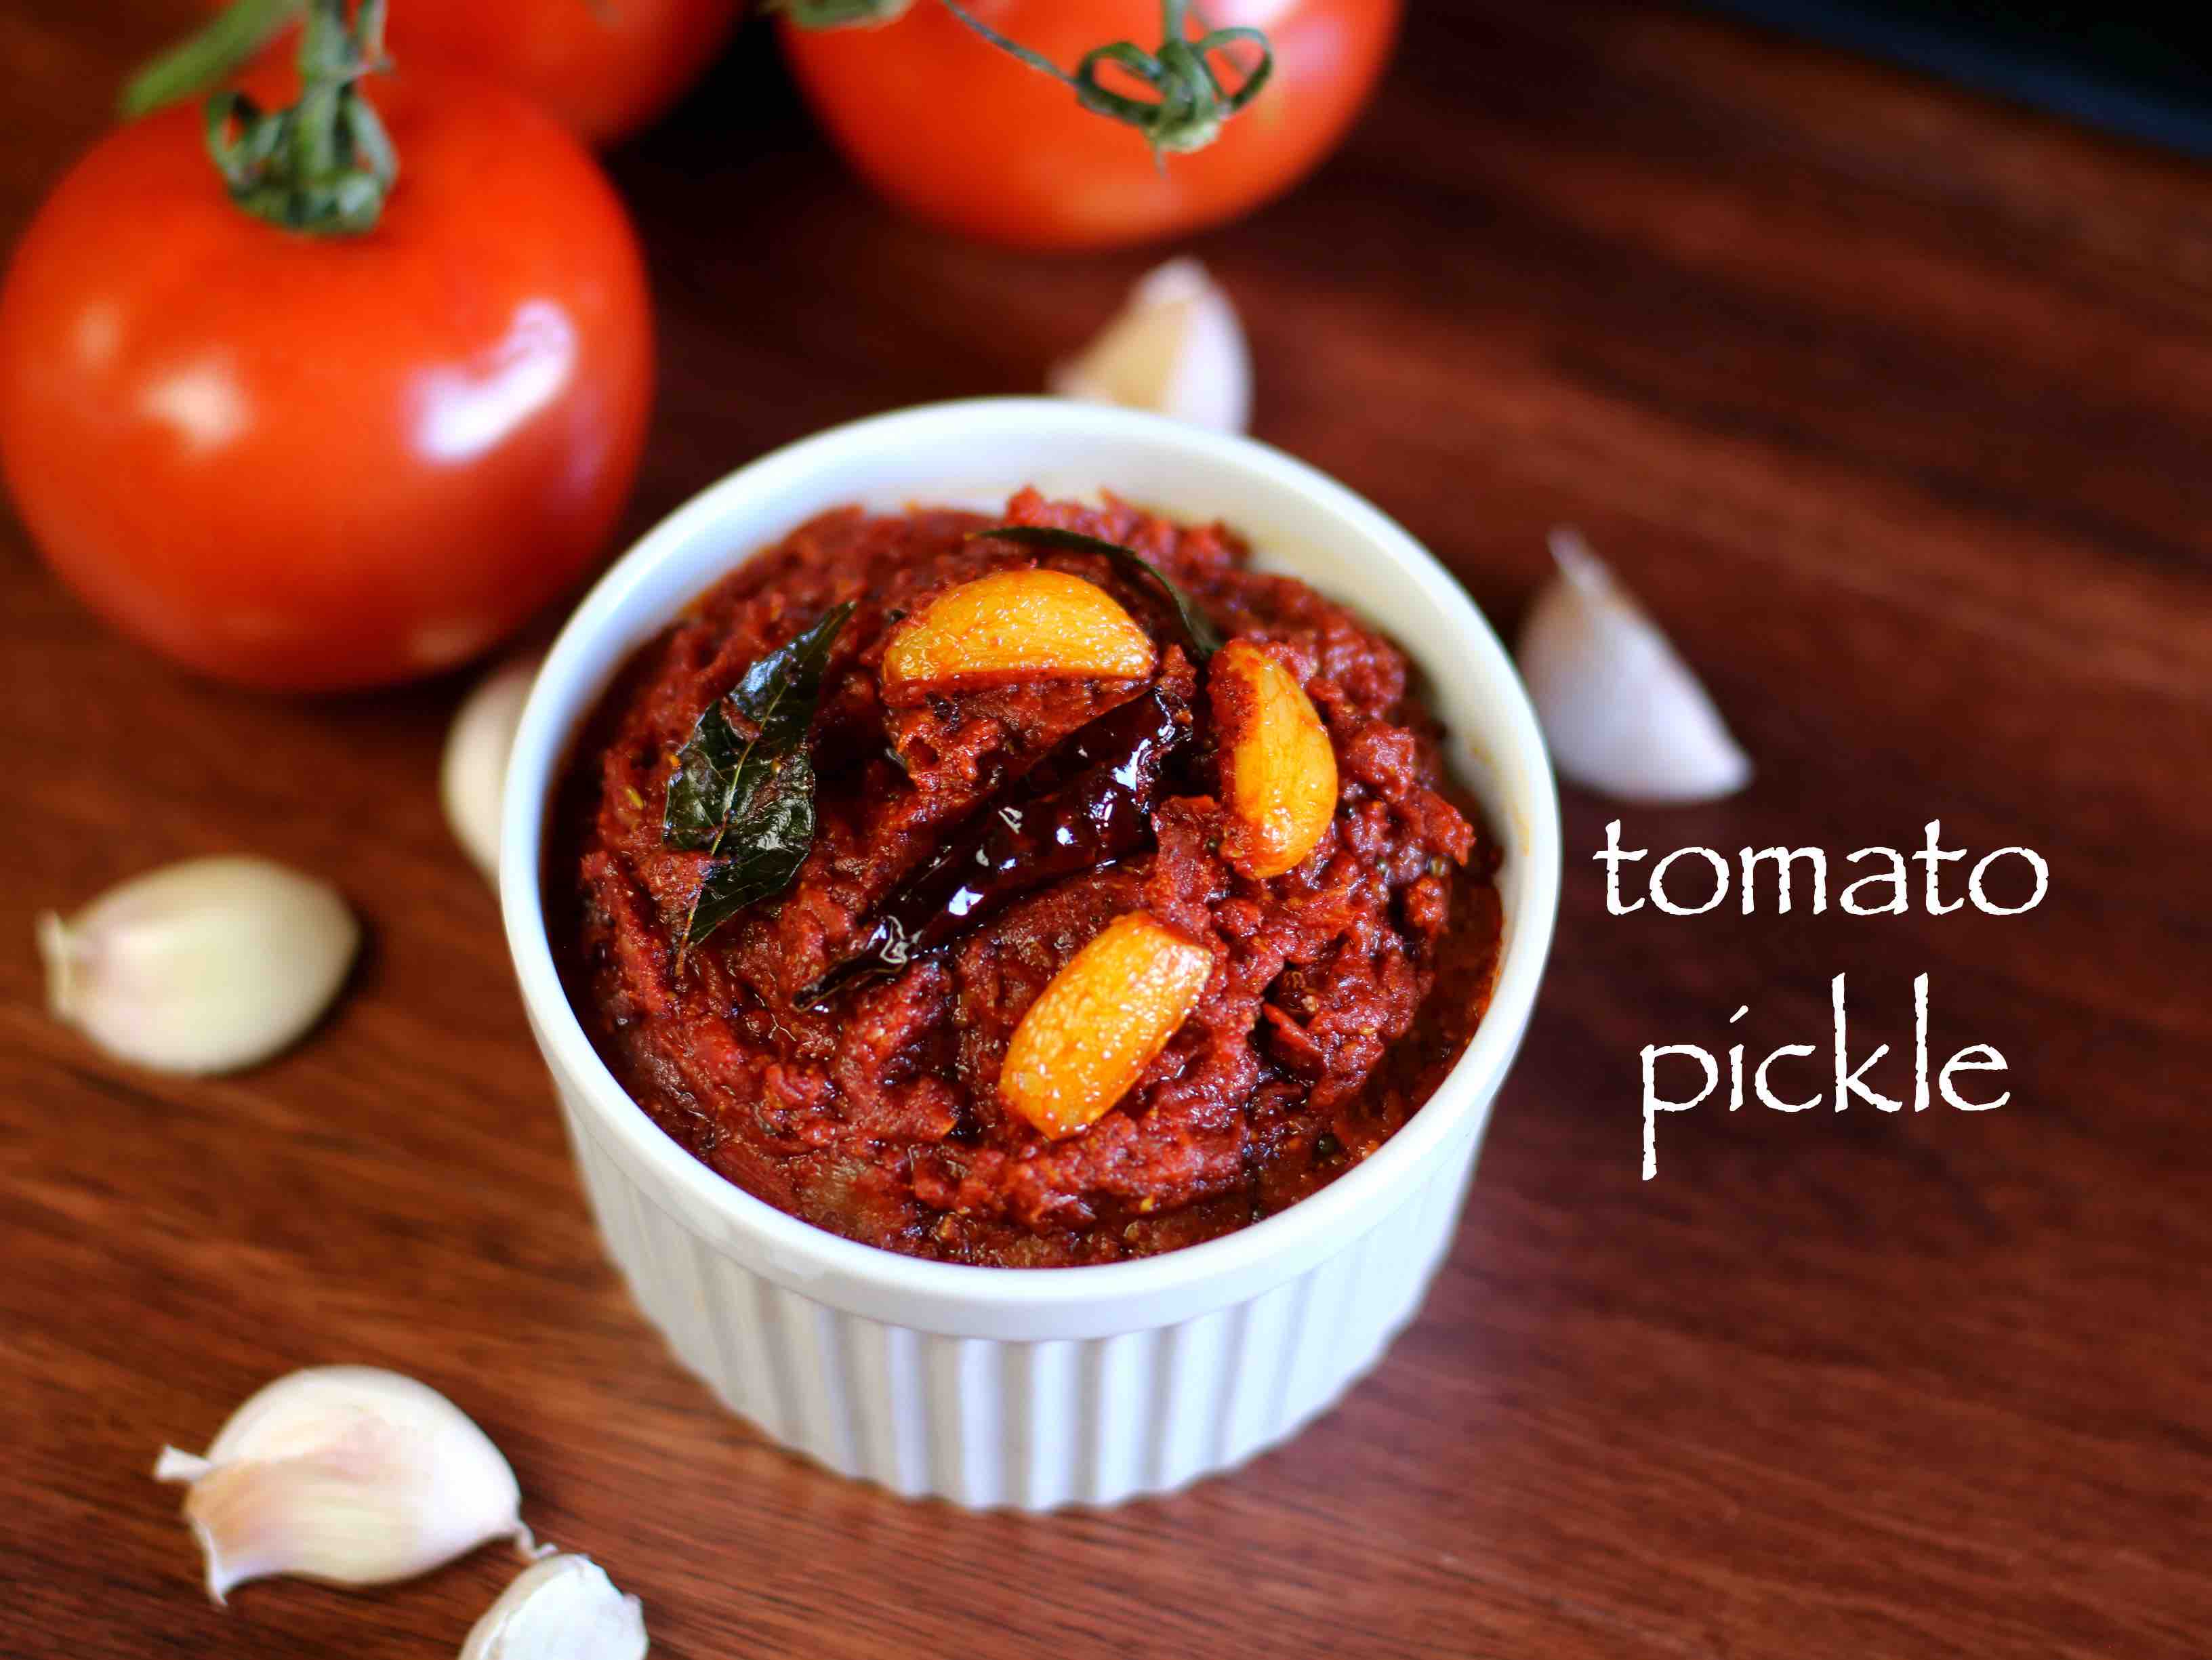 tomato pickle recipe | tomato pachadi recipe | tomato ...